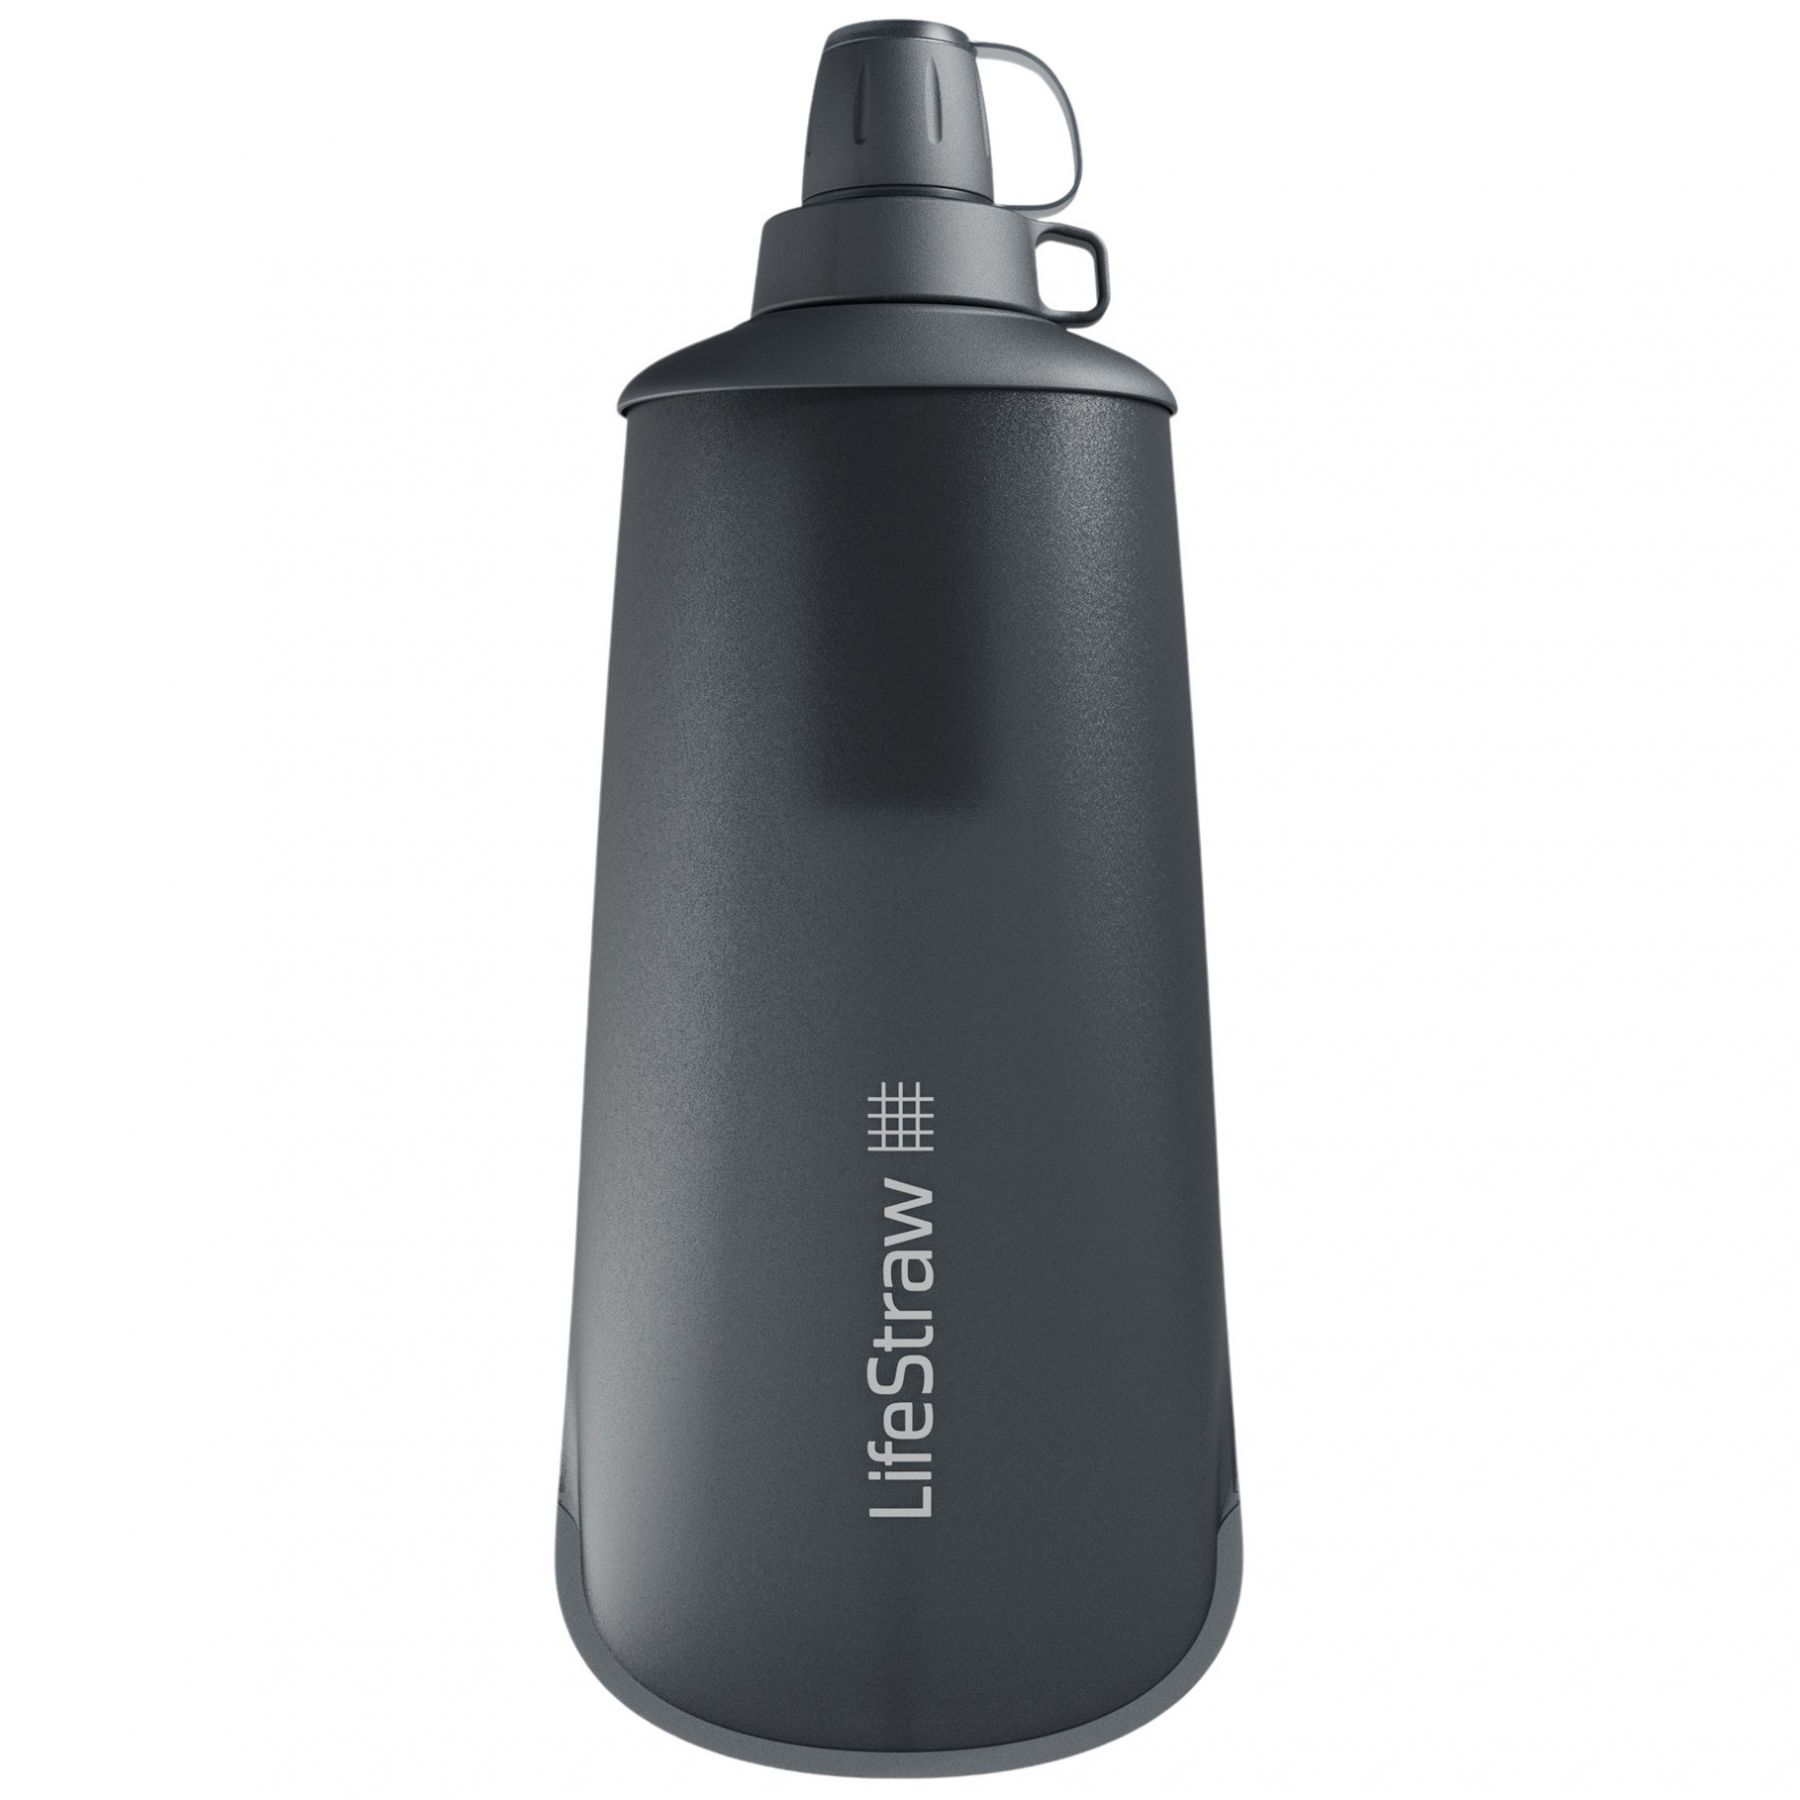 Brug LifeStraw Peak Series Collabsible Squeeze Bottle, 1L, mørkegrå til en forbedret oplevelse